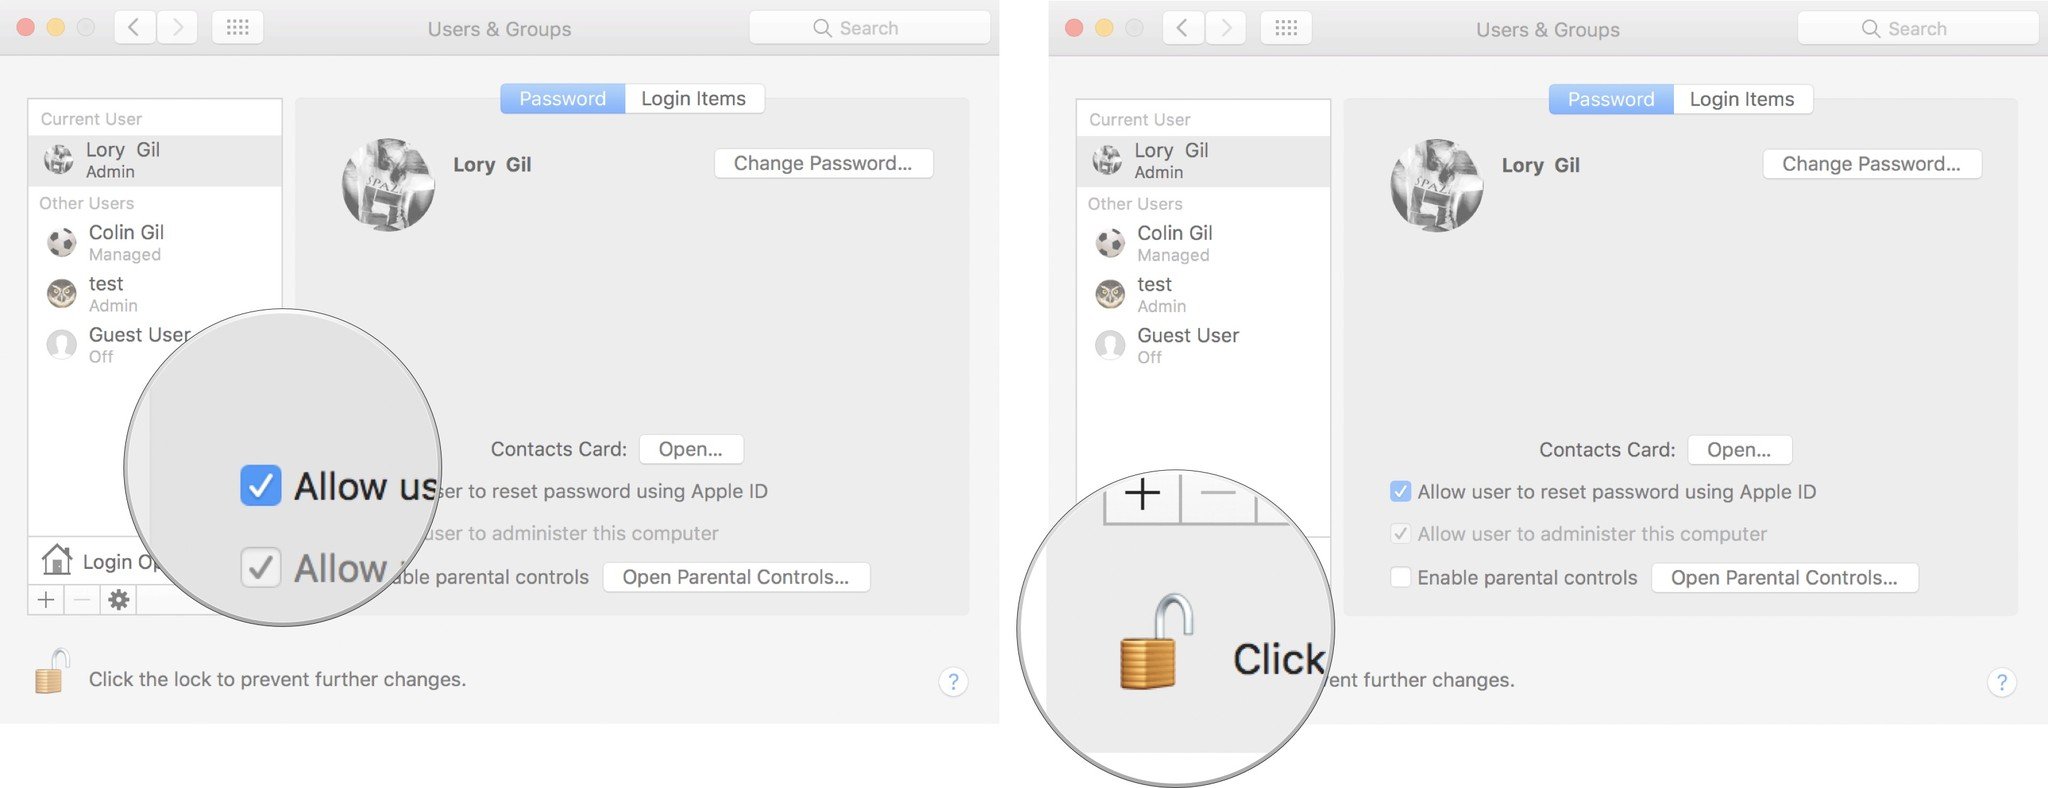 Установите флажок, чтобы разрешить Apple ID сбрасывать Mac, затем нажмите на замок.